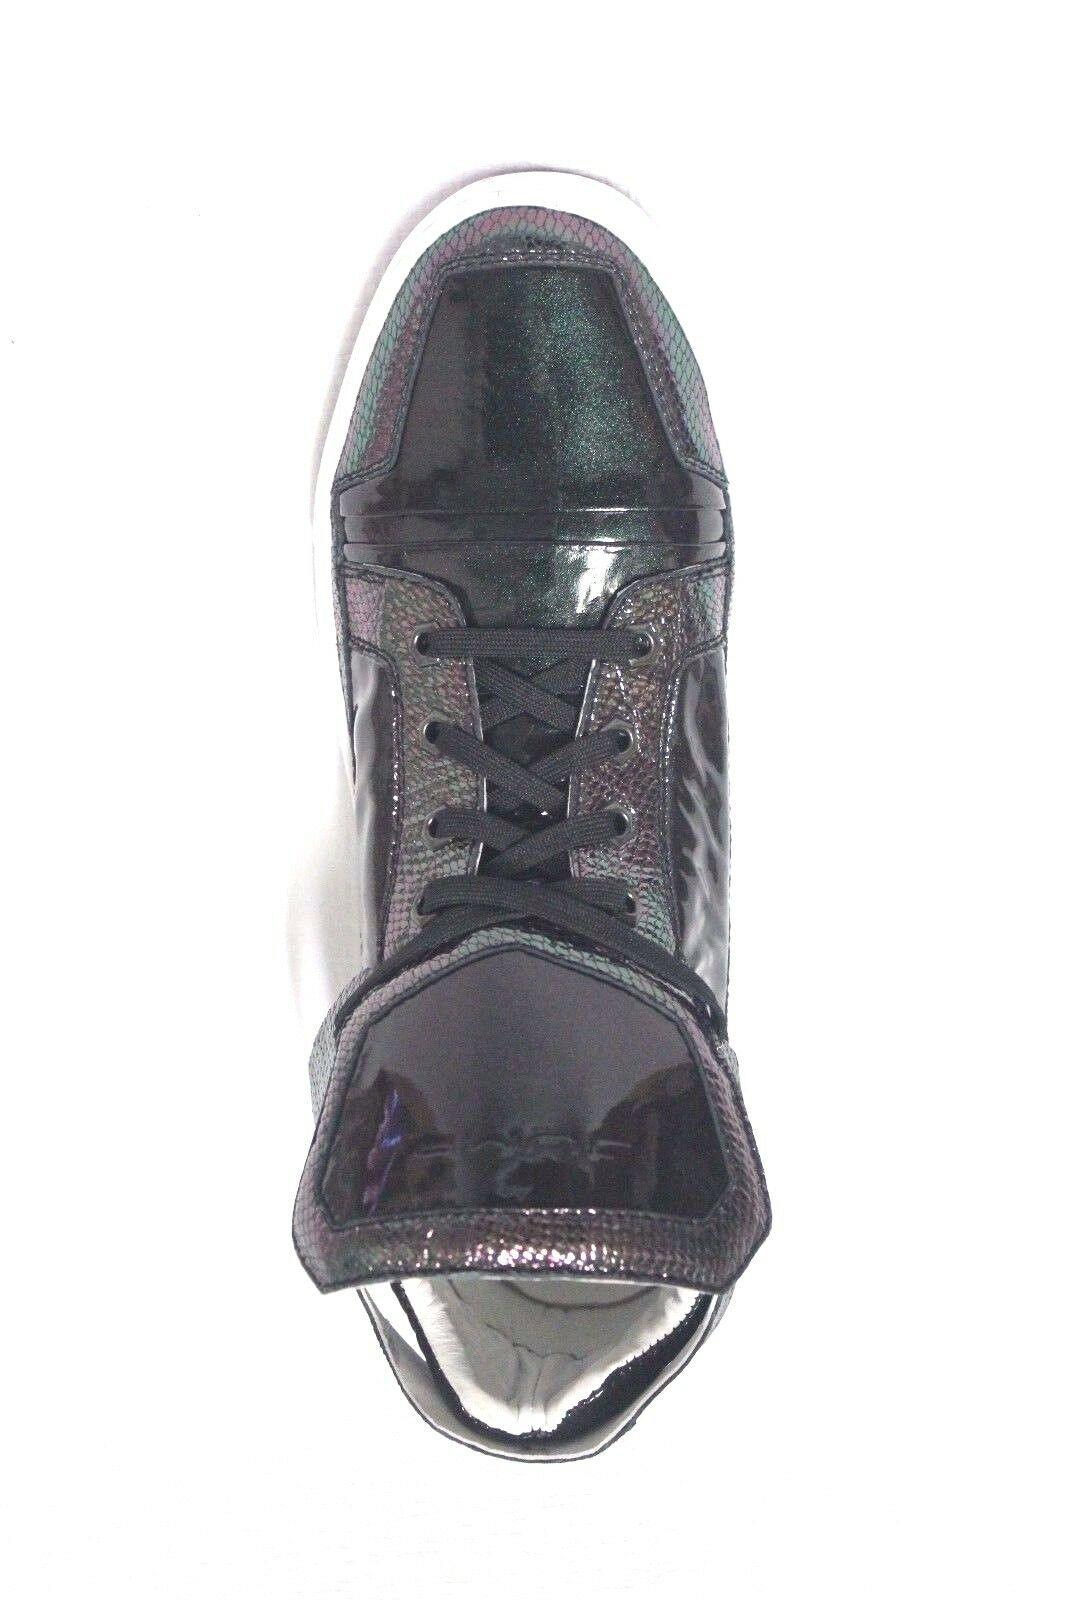 JUMP TABOO ZEMA LTD Green Purple Leather Fashion Sneaker Men's Size 10 D - SVNYFancy